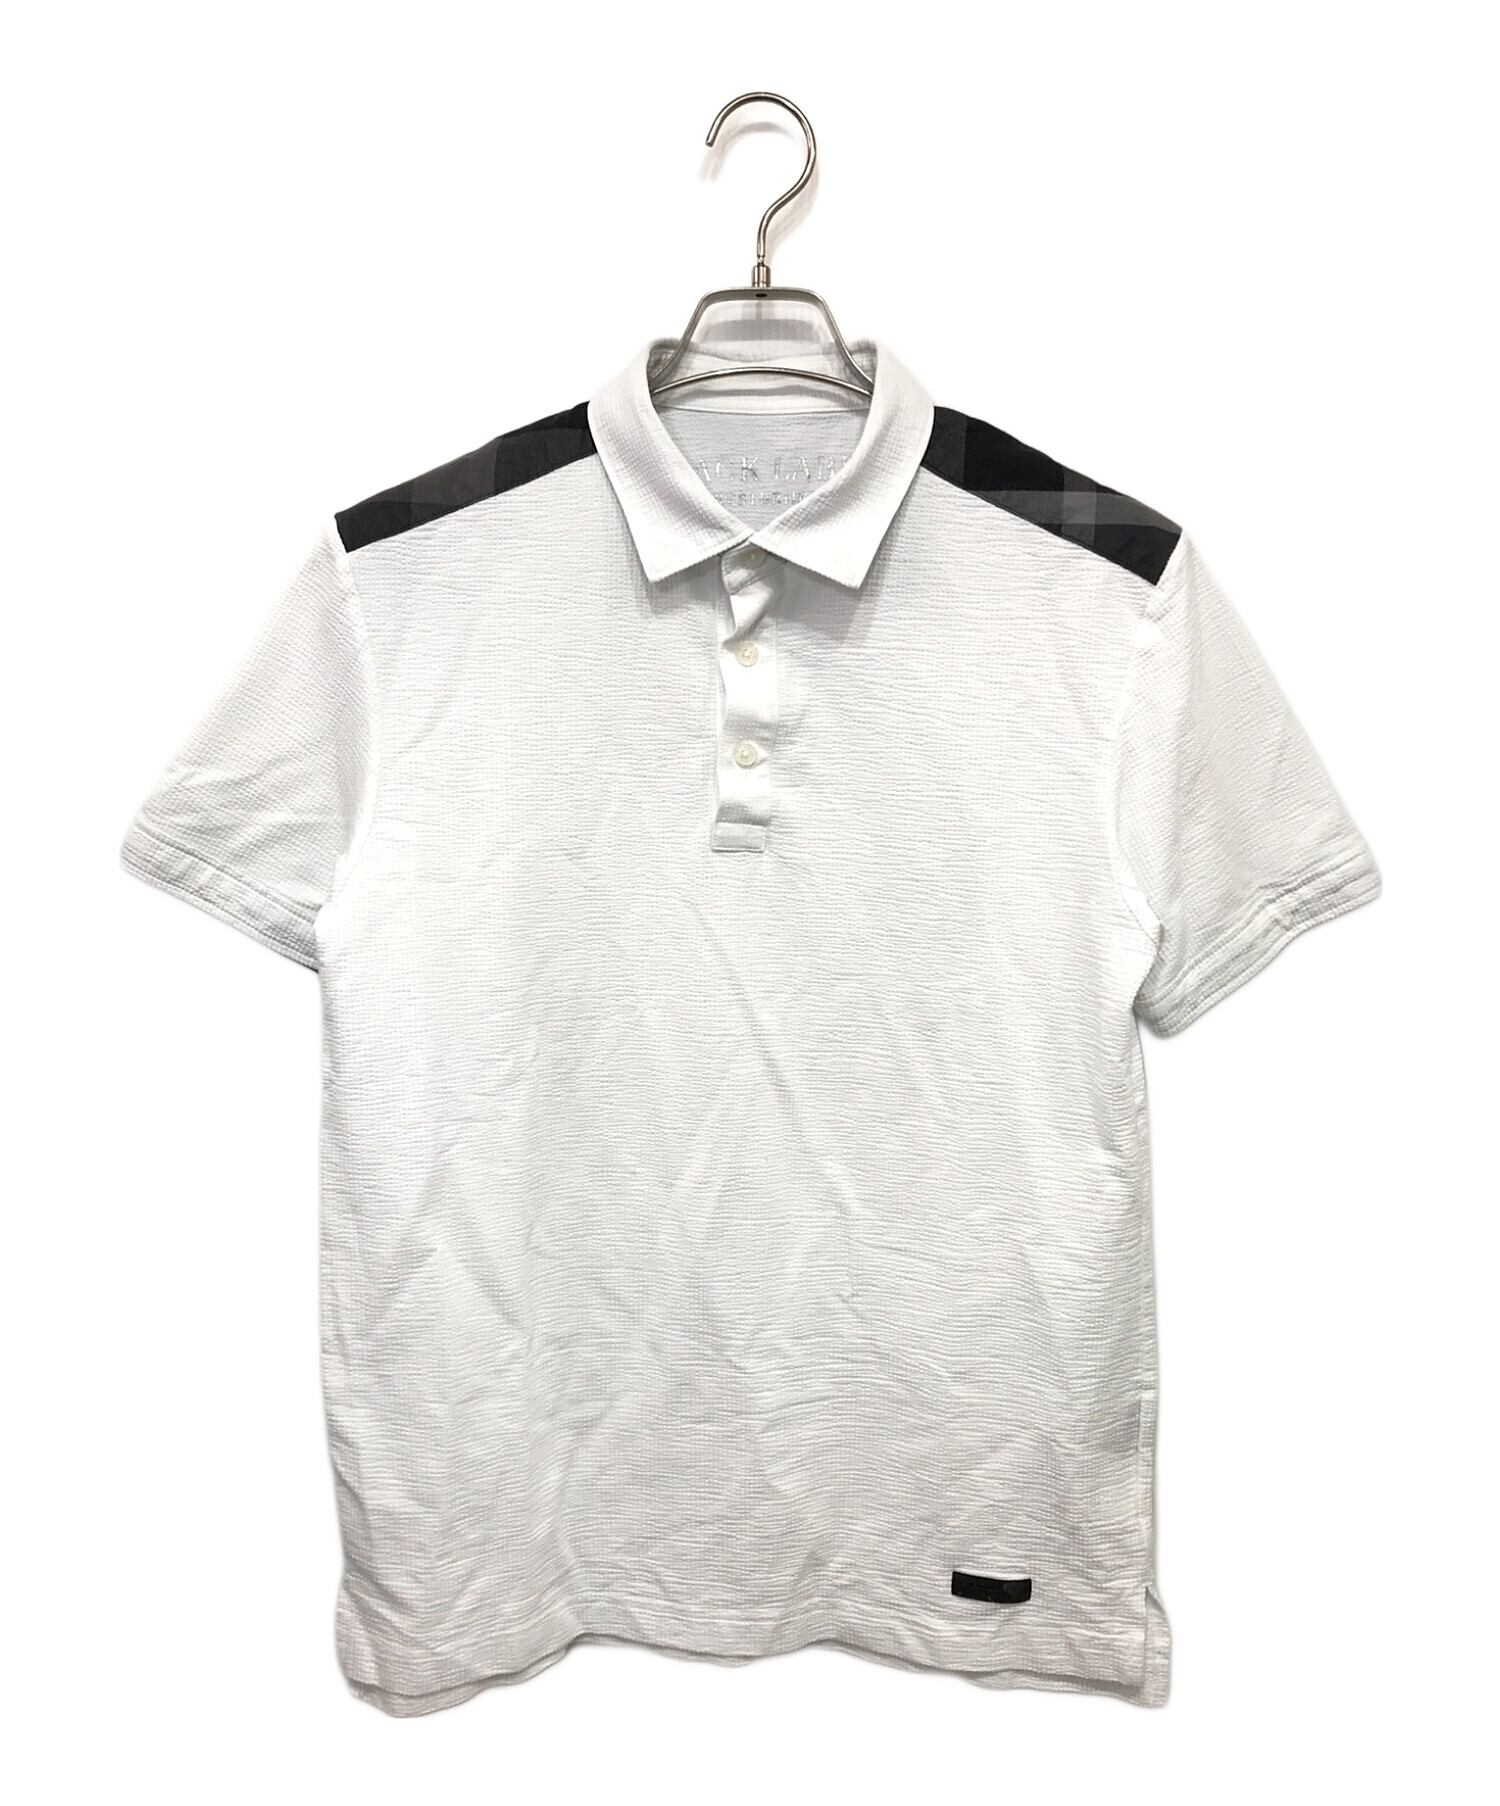 BLACK LABEL CRESTBRIDGE (ブラックレーベル クレストブリッジ) ポロシャツ ホワイト×グレー サイズ:L